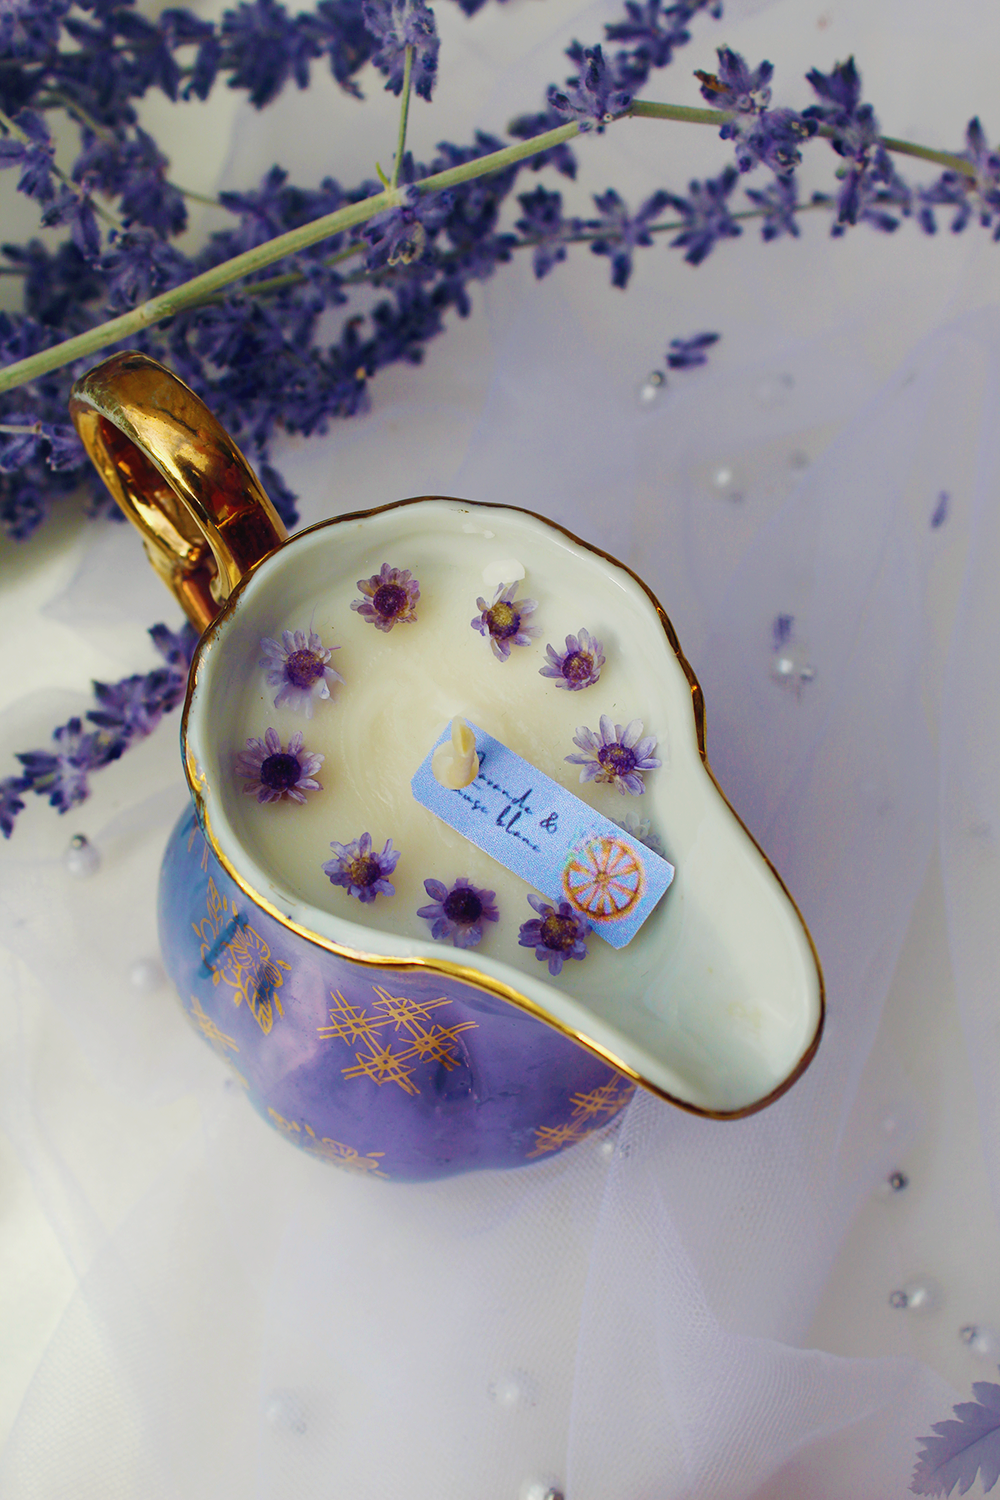 Lavande royale - parfum balade en Provence collection lavande royale